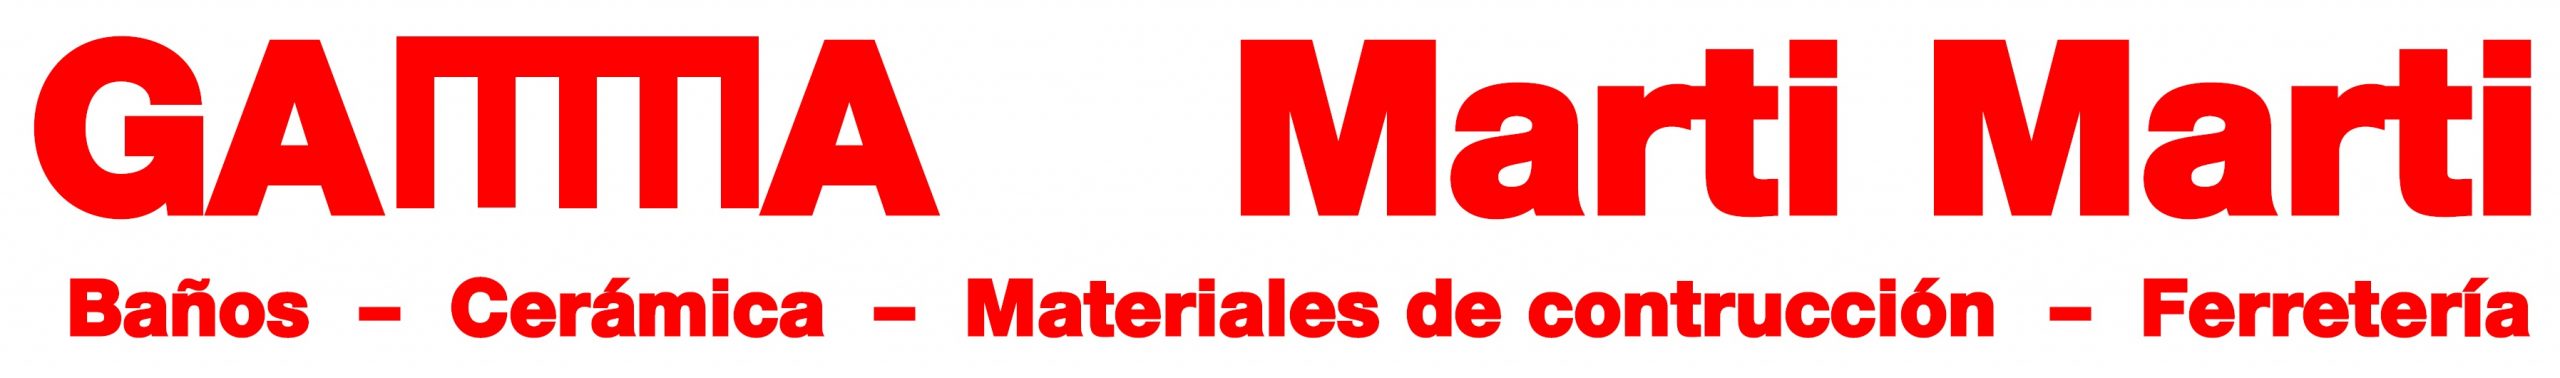 Martí Martí